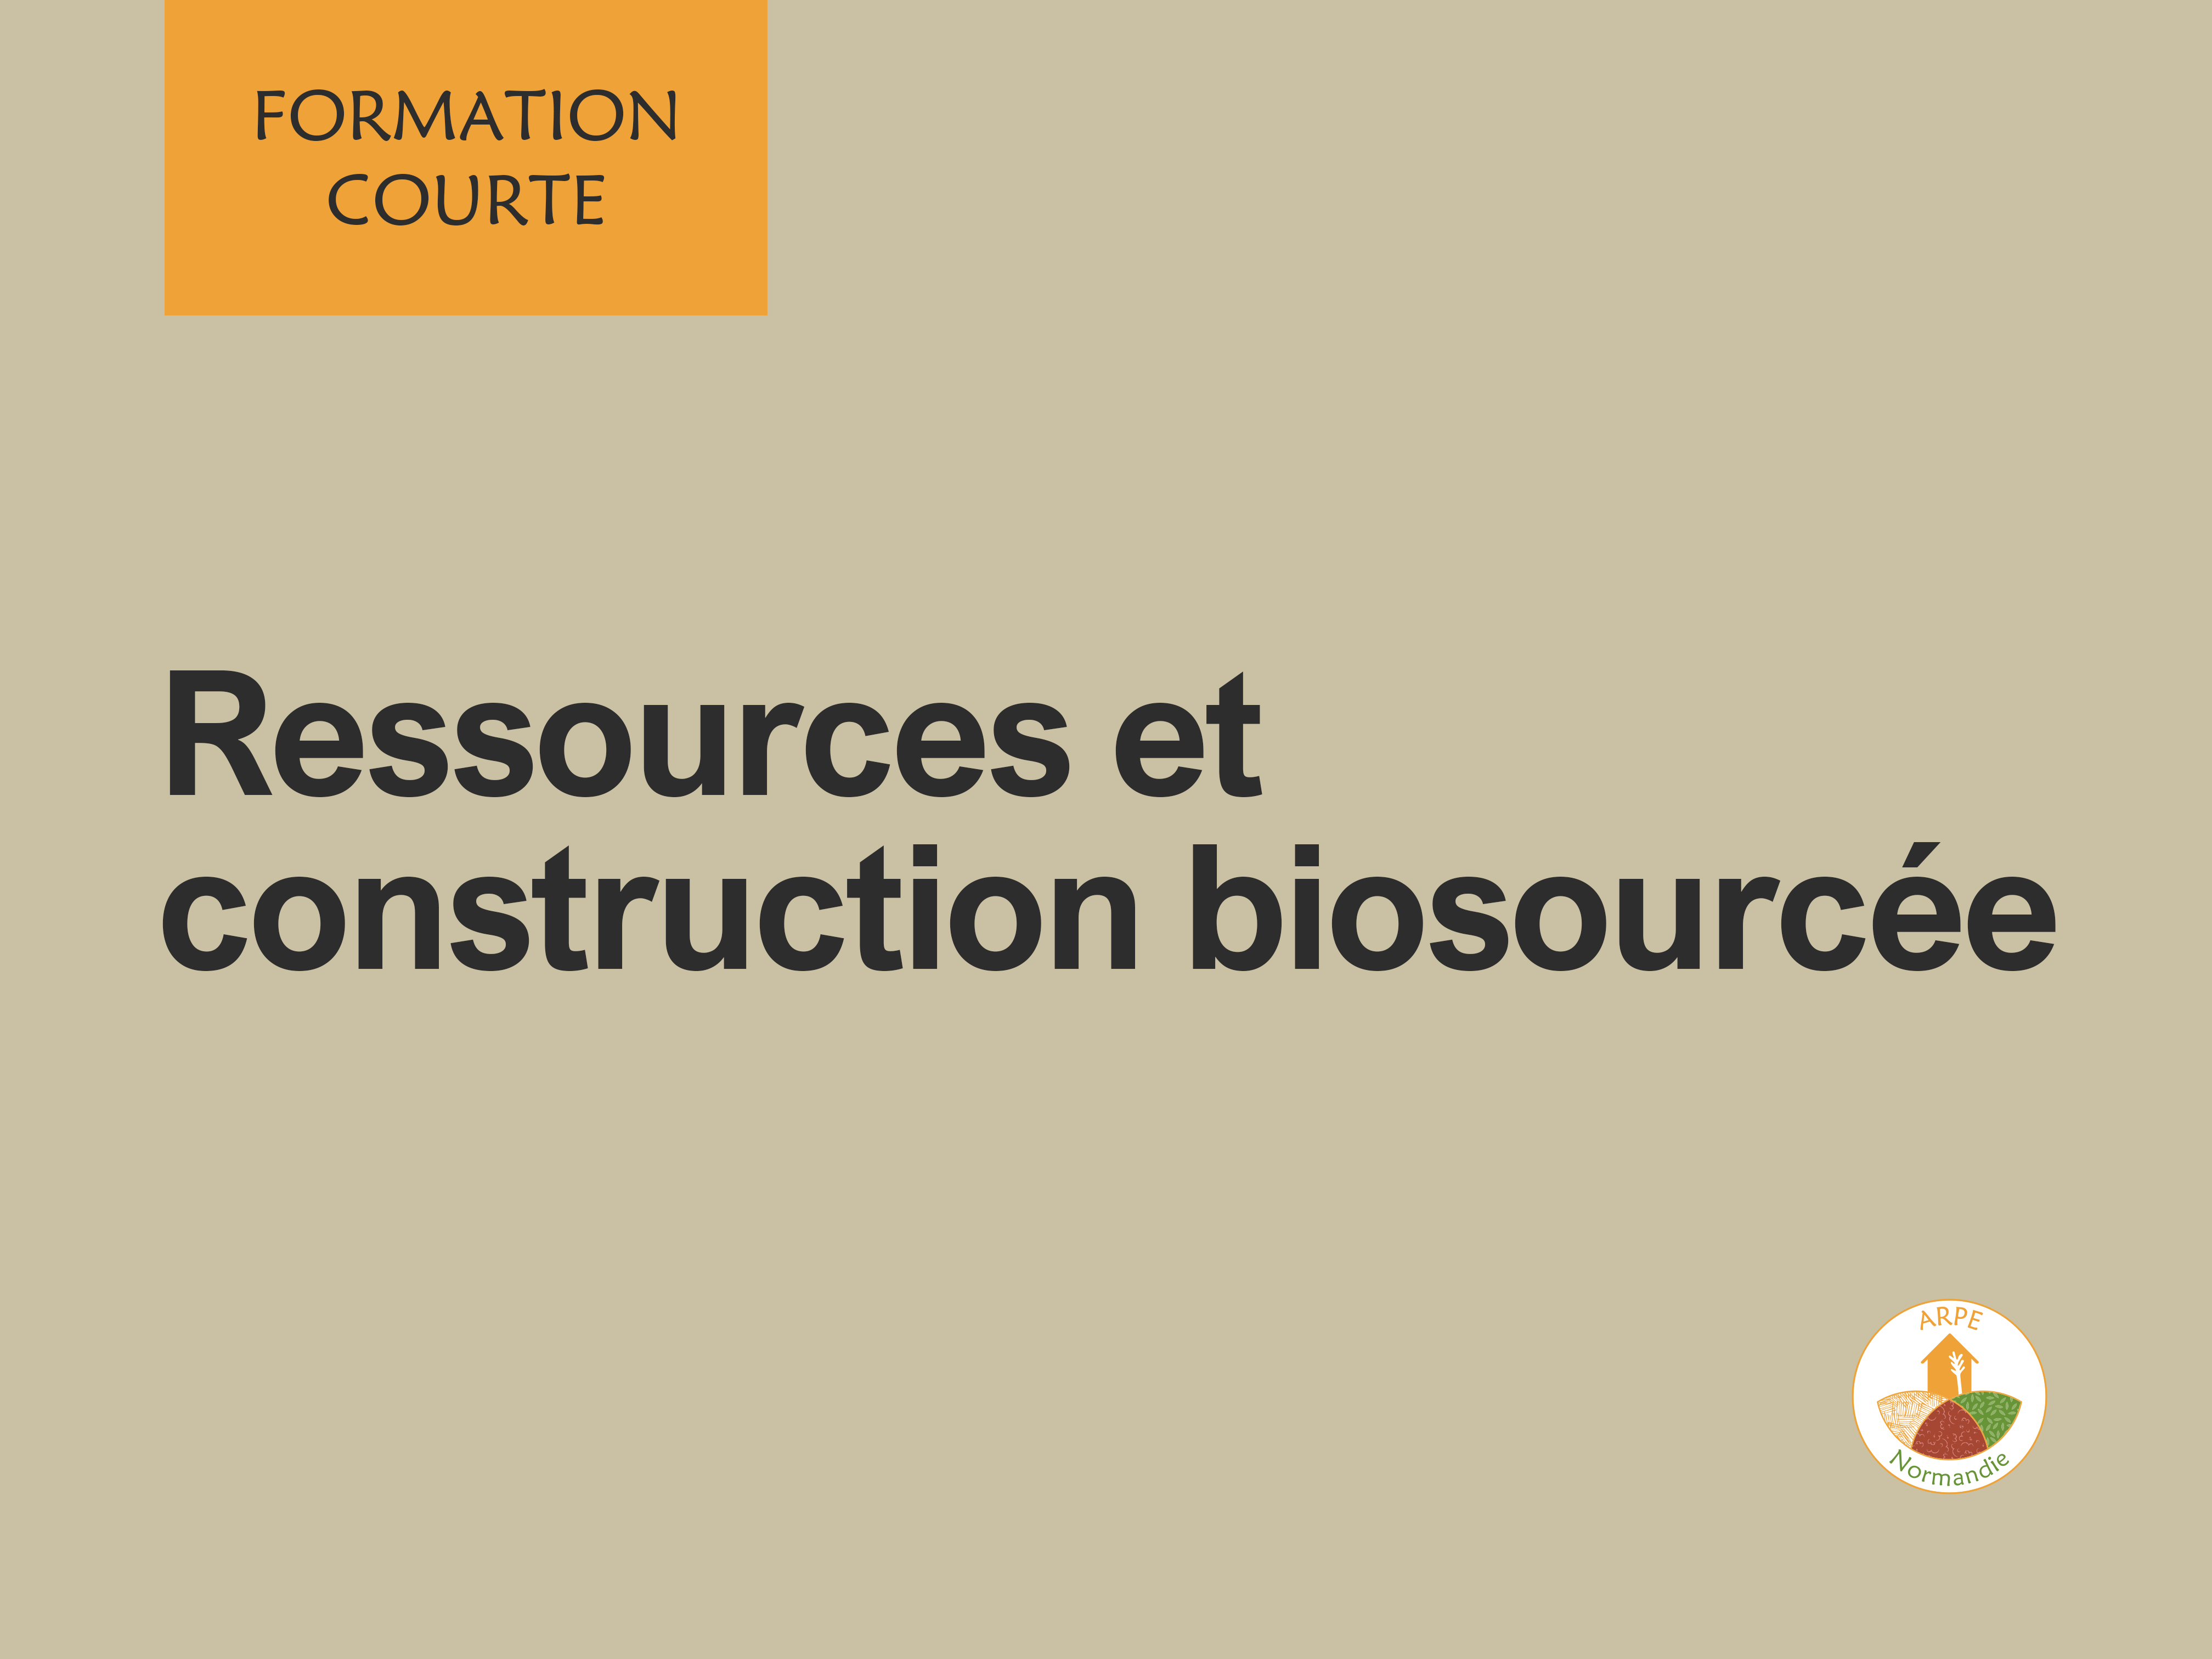 Lire la suite à propos de l’article FORMATION COURTE – Ressources et construction biosourcée